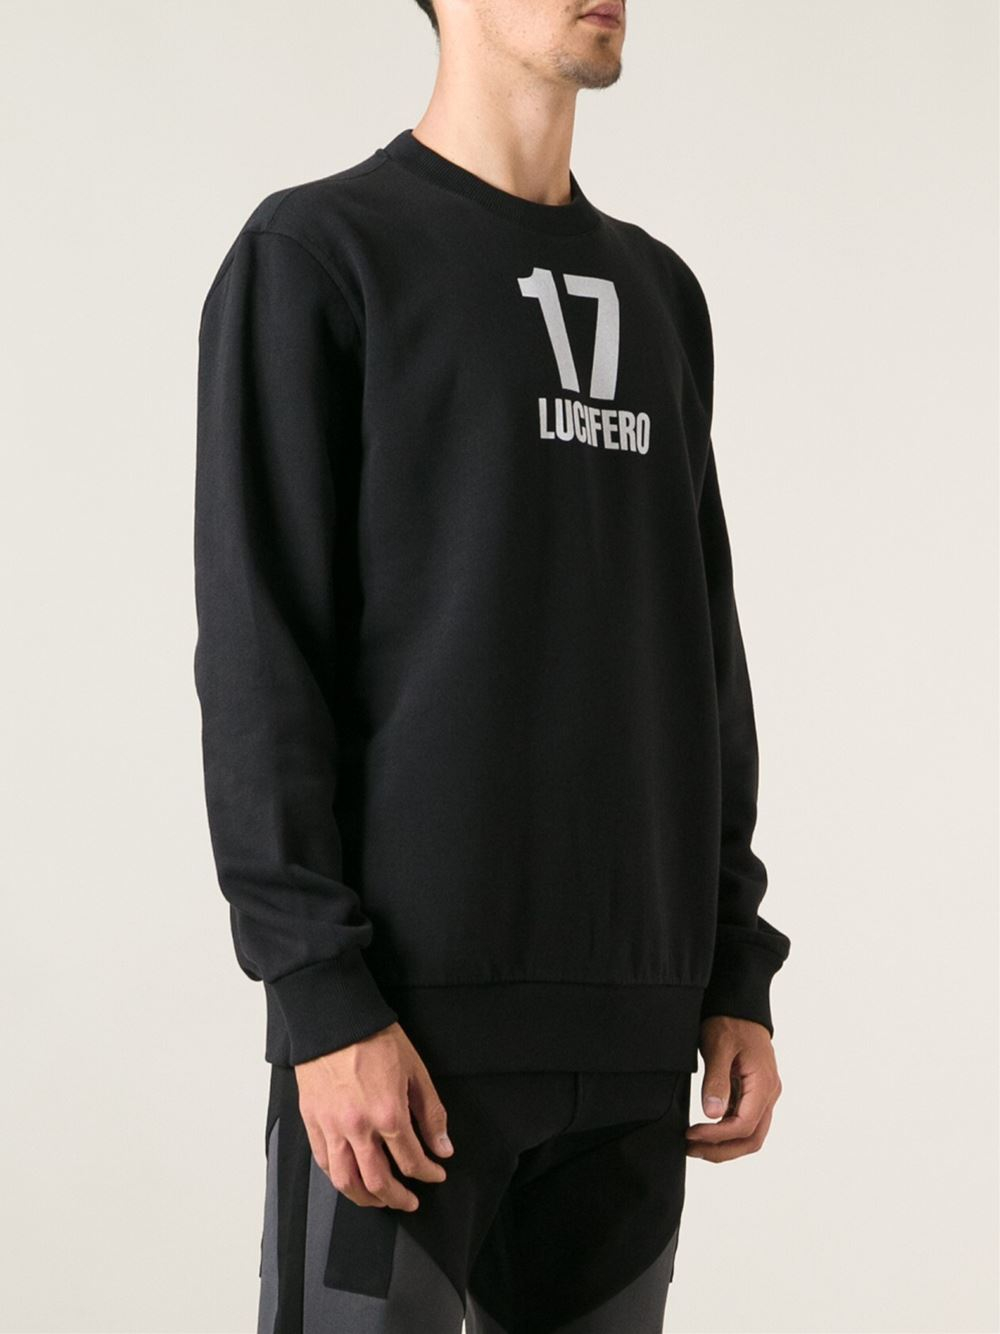 Lyst - Givenchy '17 Lucifero' Sweatshirt in Black for Men